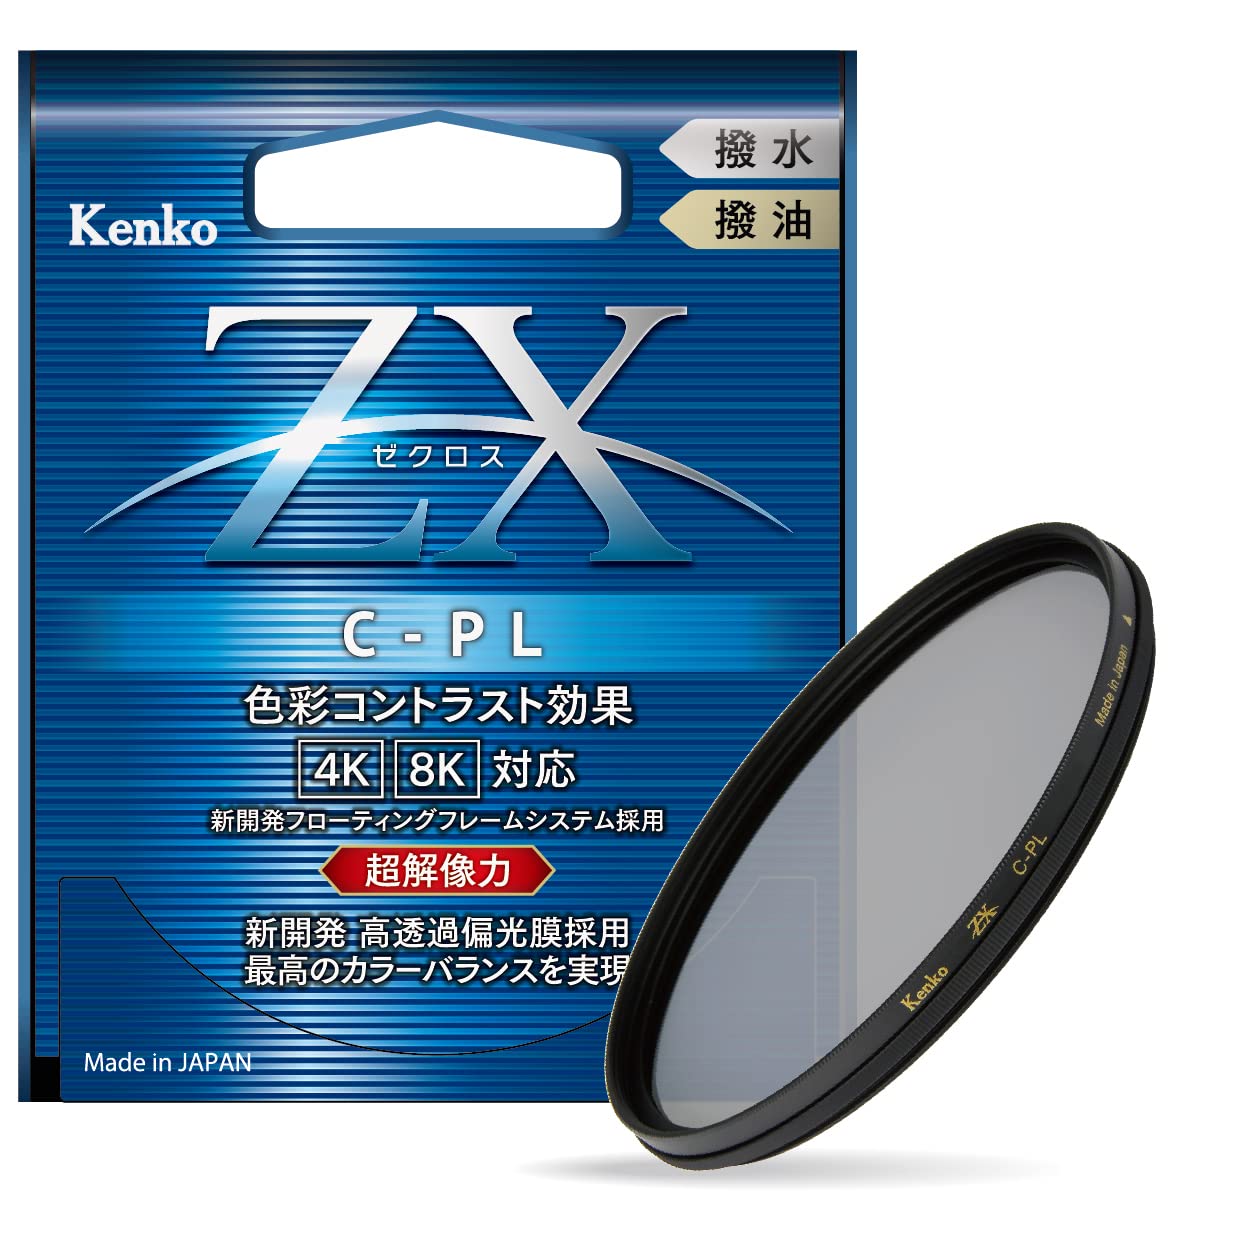 Kenko PLフィルター ZX サーキュラーPL 49mm 高透過偏光膜採用 撥水・撥油コーティング フローティングフレームシステム 549421